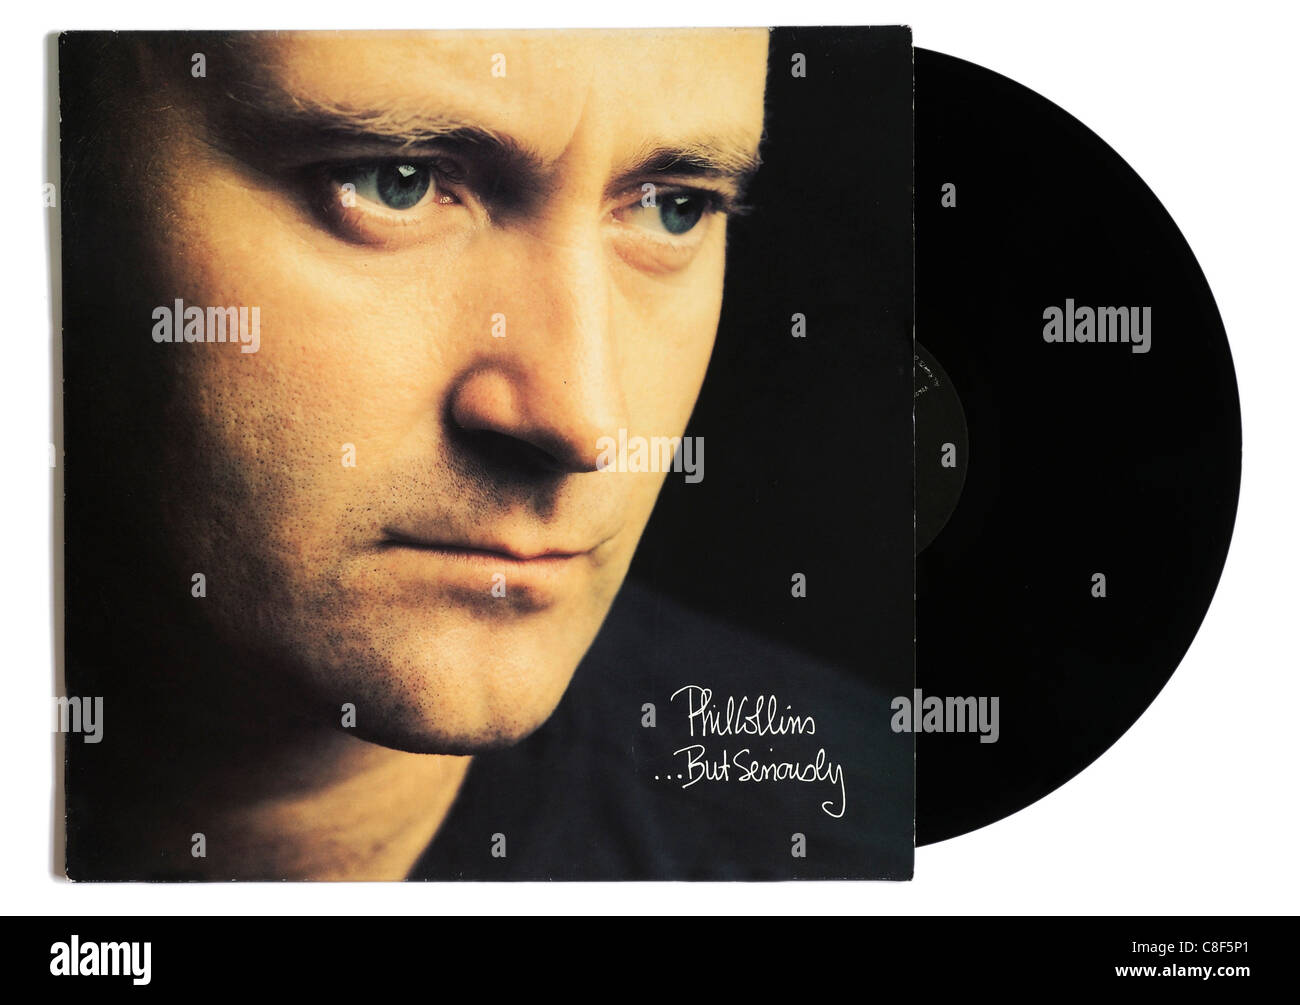 Phil Collins aber ernsthaft album Stockfoto